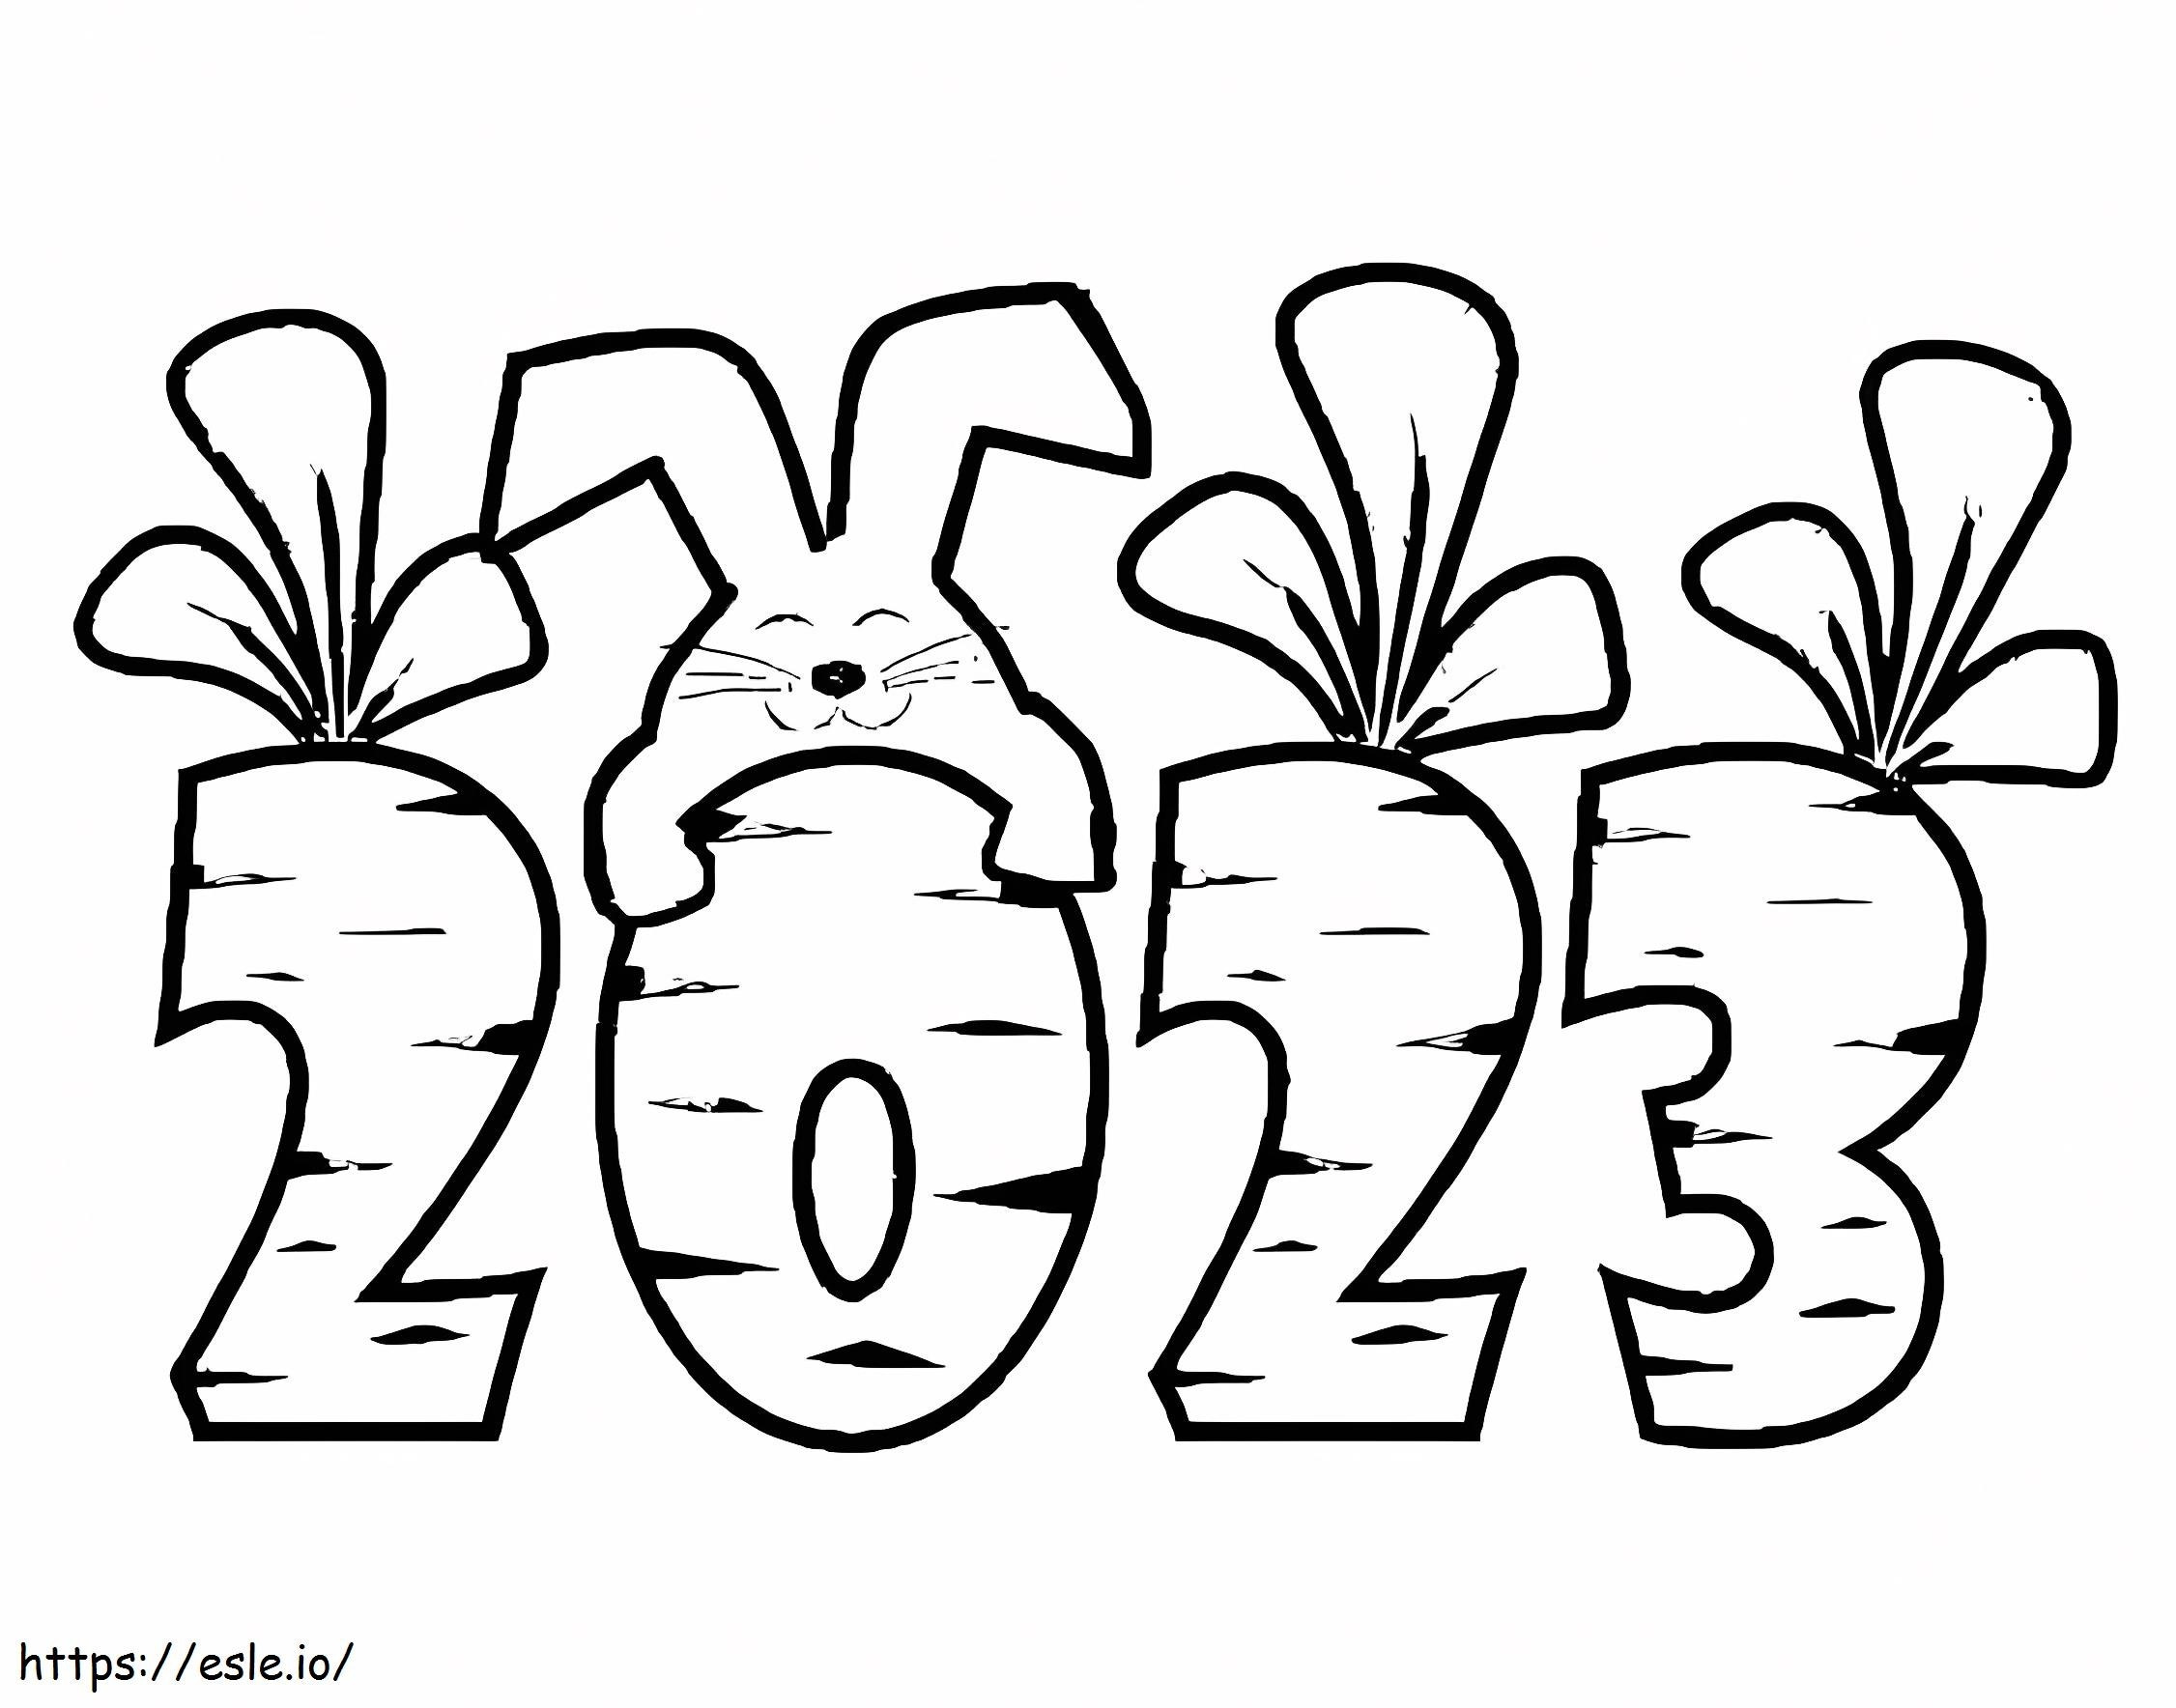 Coloriage Année 2023 avec lapin à imprimer dessin